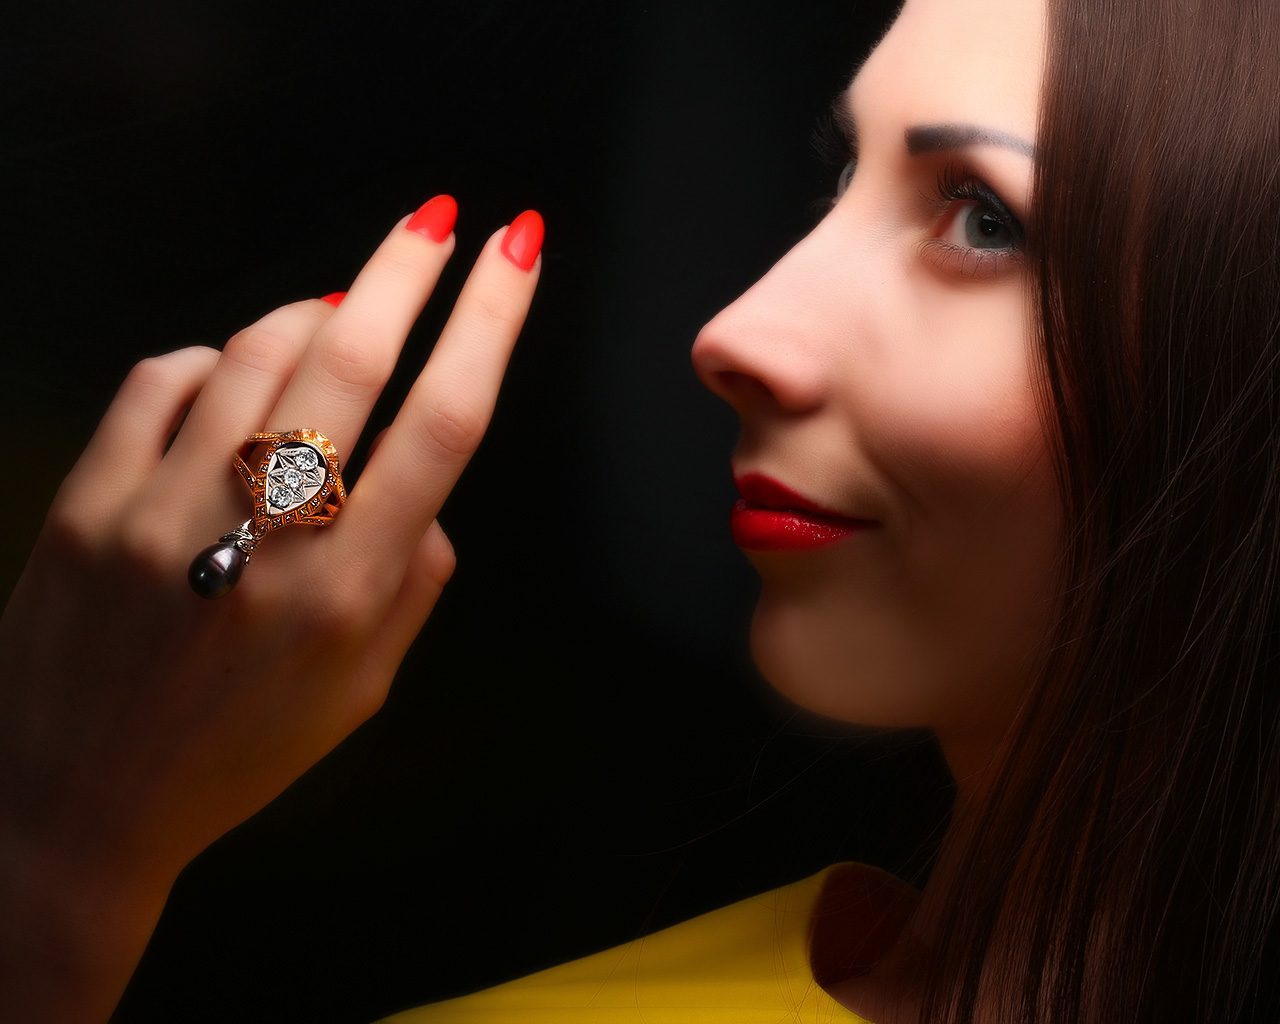 Необычное бриллиантовое кольцо с черным жемчугом